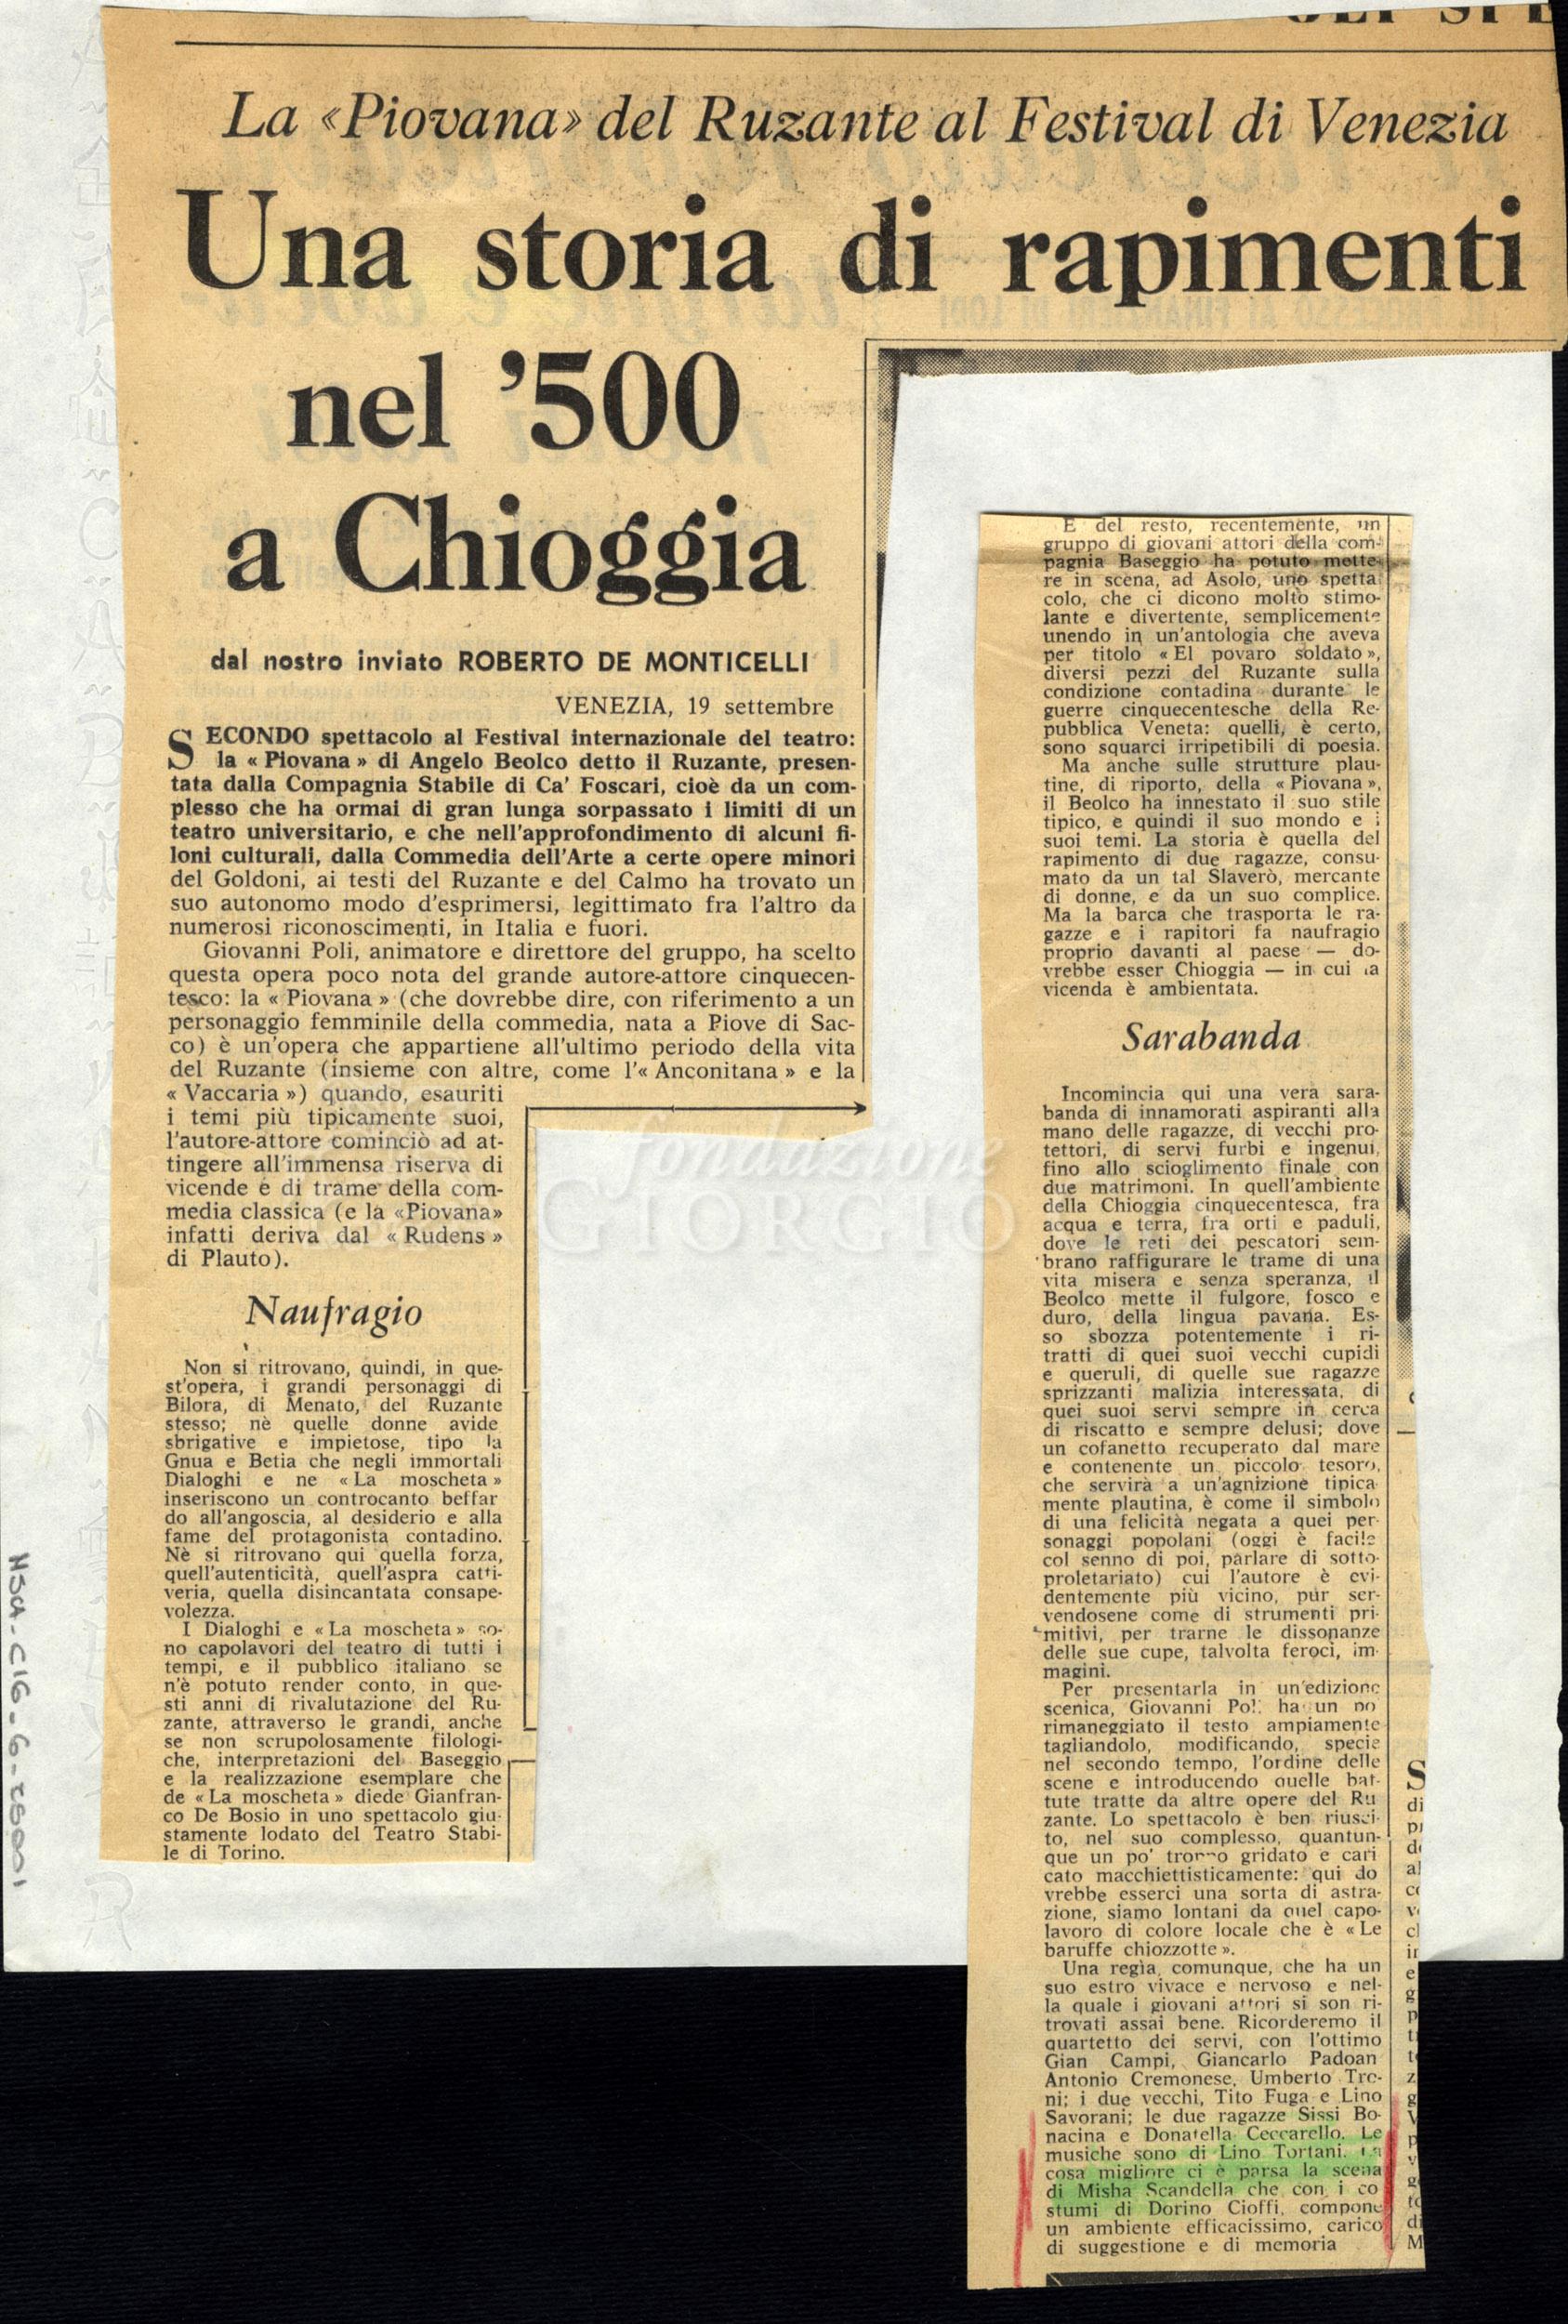 Una storia di rapimenti nel '500 a Chioggia
				 : La «Piovana» del Ruzante al Festival di Venezia settembre 1963